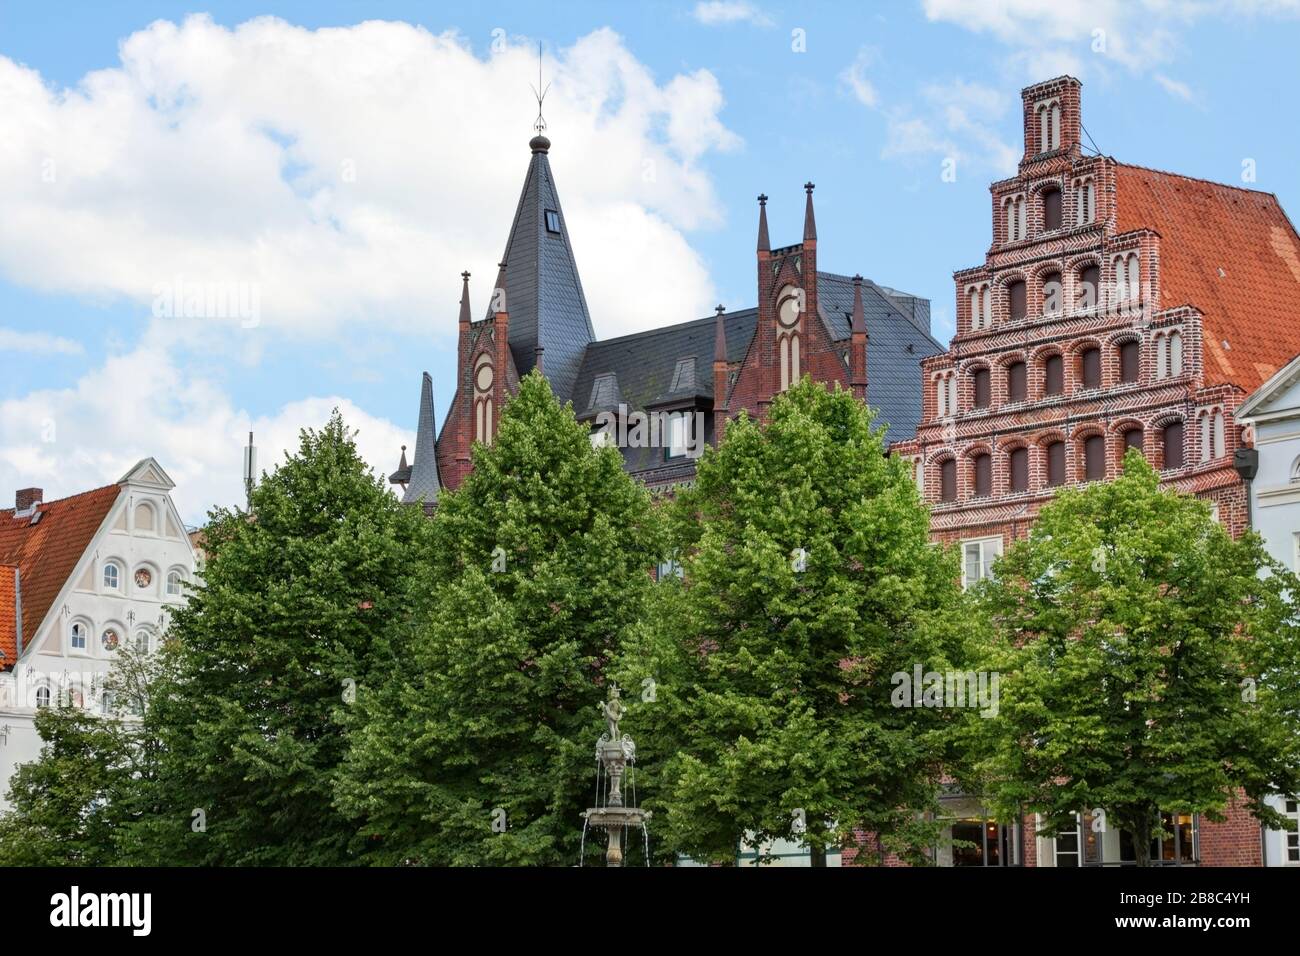 Lüneburg, Allemagne – 06. Juillet 2017: Vous pouvez voir une rangée historique de maisons 'Am Marktplatz', c'est la place principale de Lüneburg, aussi l'hôtel de ville est lo Banque D'Images